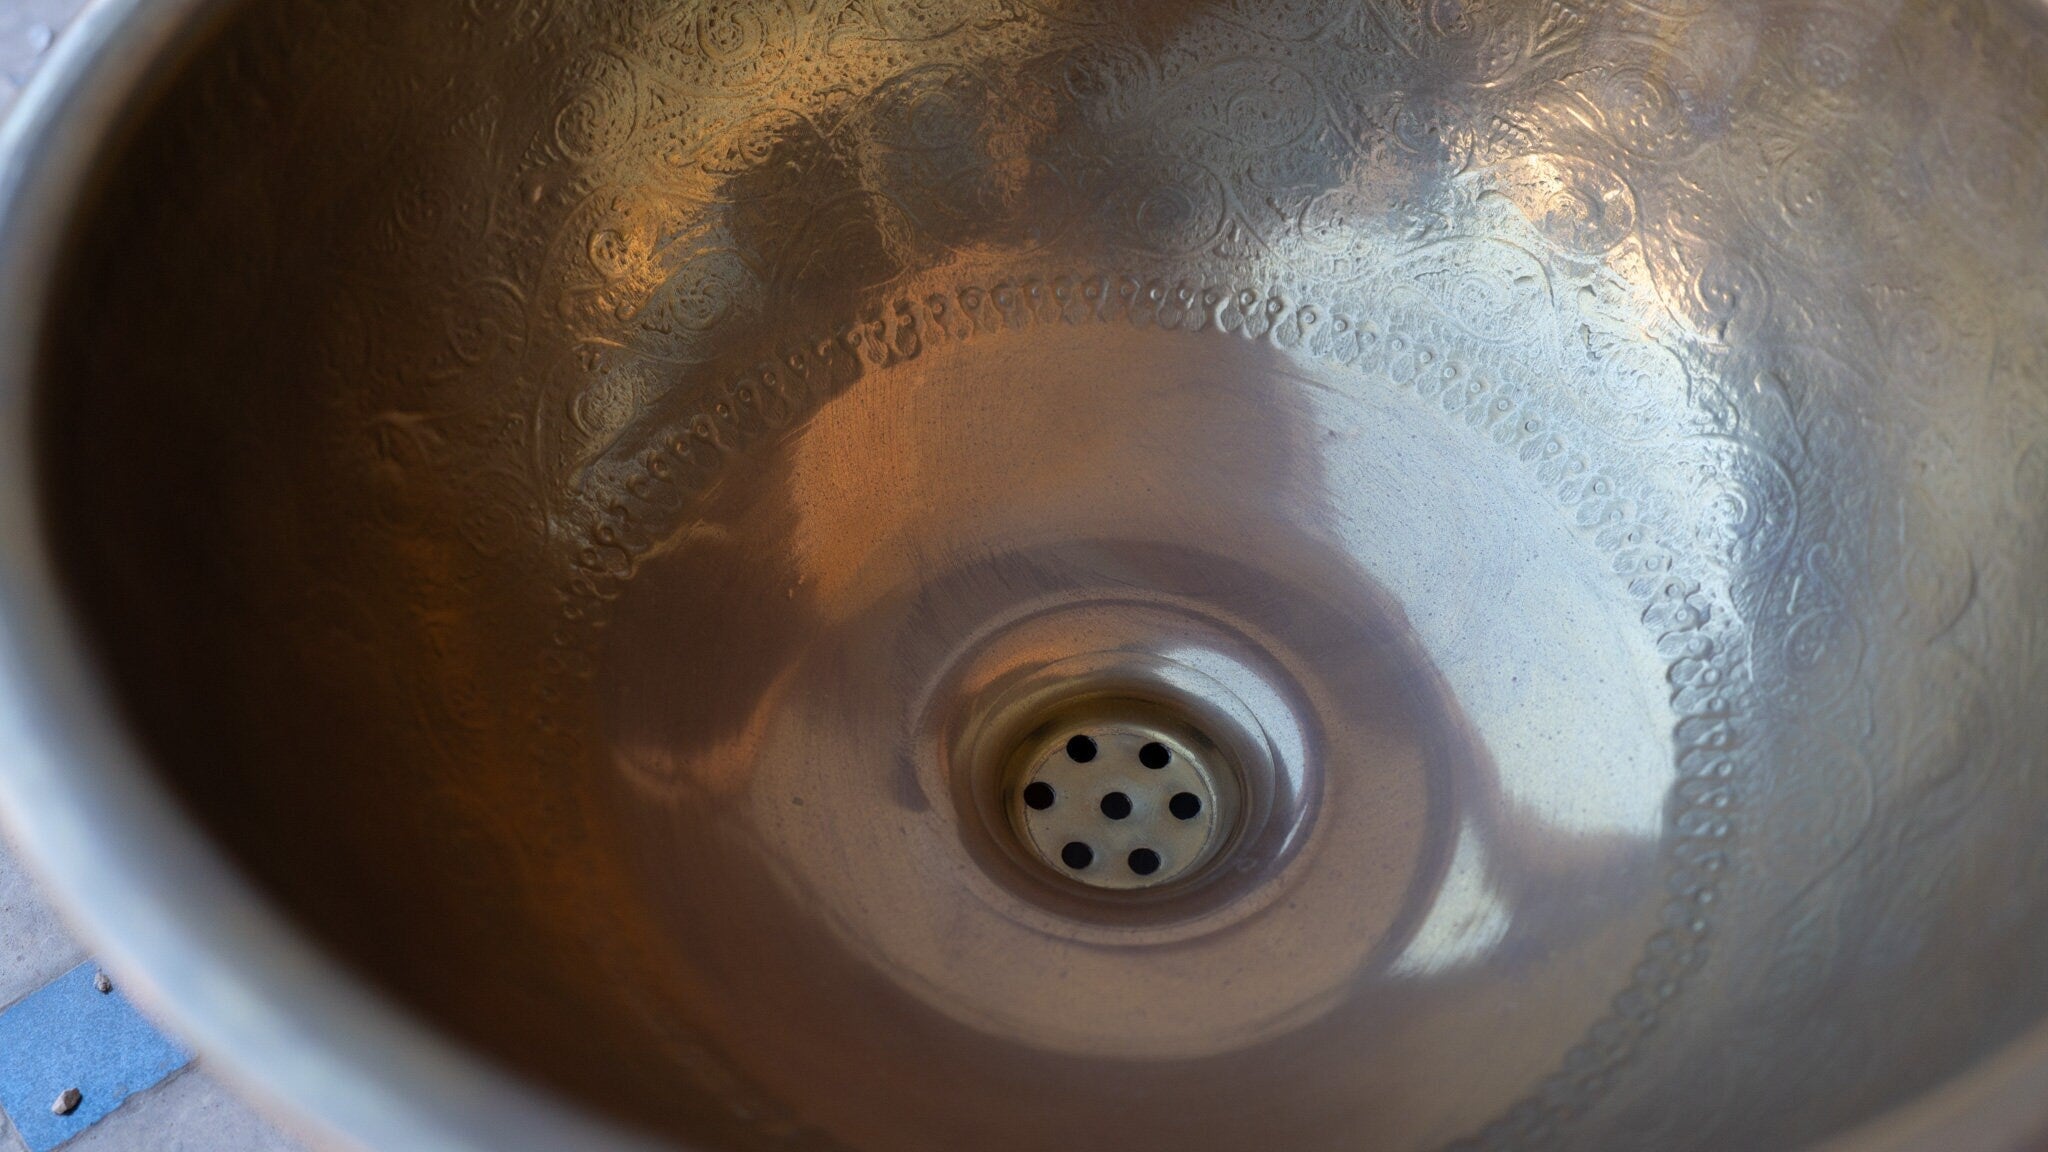 Antique Brass Bowl Vessel Sink Engraved Bathroom Vanity Basin, Gold Vintage Engraved Sink